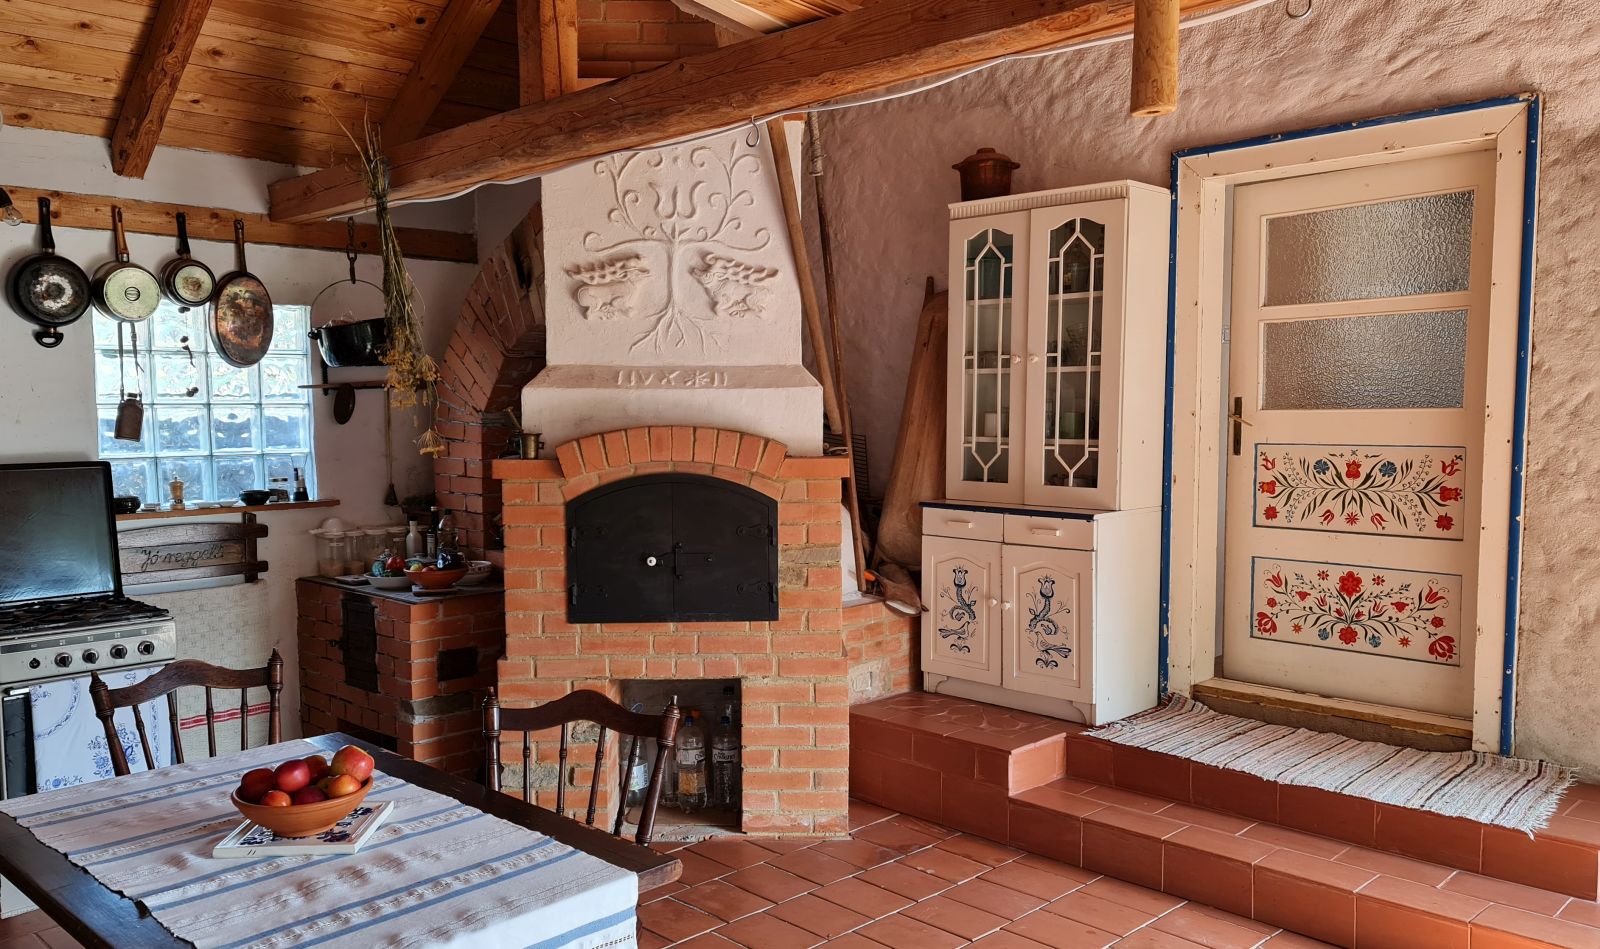 Ușa atelierului Vilmei se deschide către bucătăria de vară, practic un corp nou ce leagă casa veche de spațiul de lucru. 